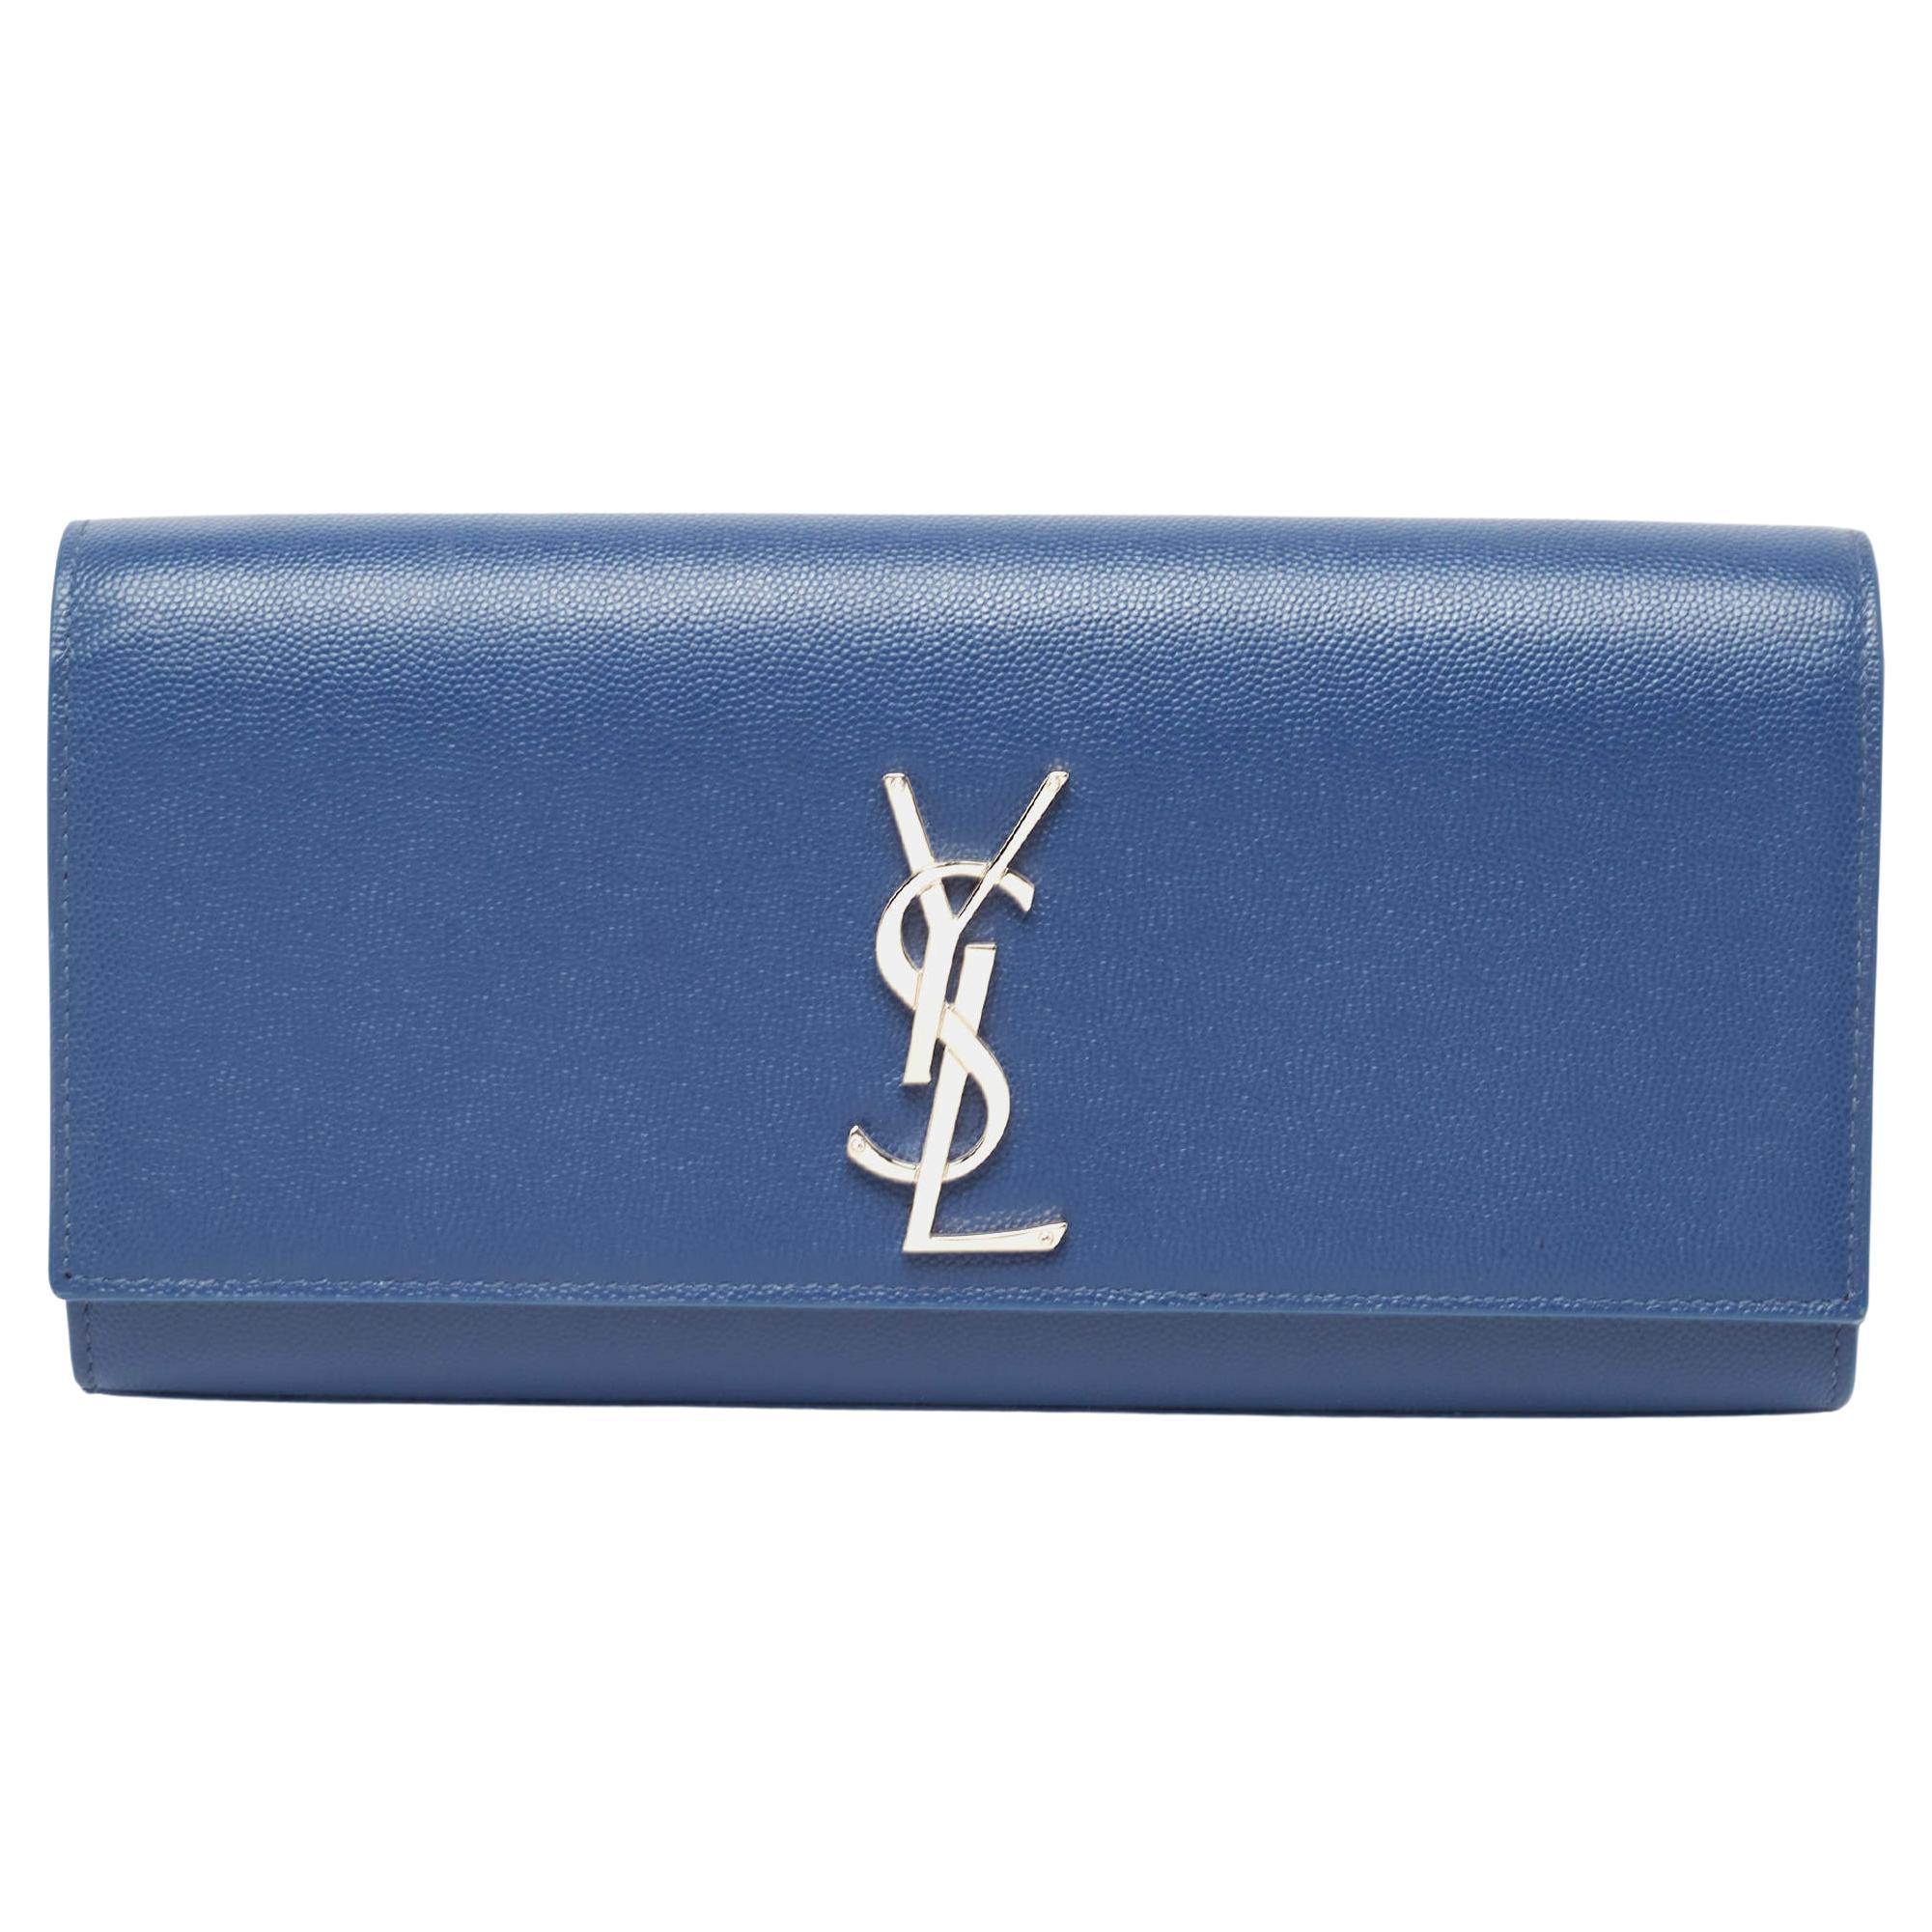 Saint Laurent Blue Leather Kate Monogram Clutch